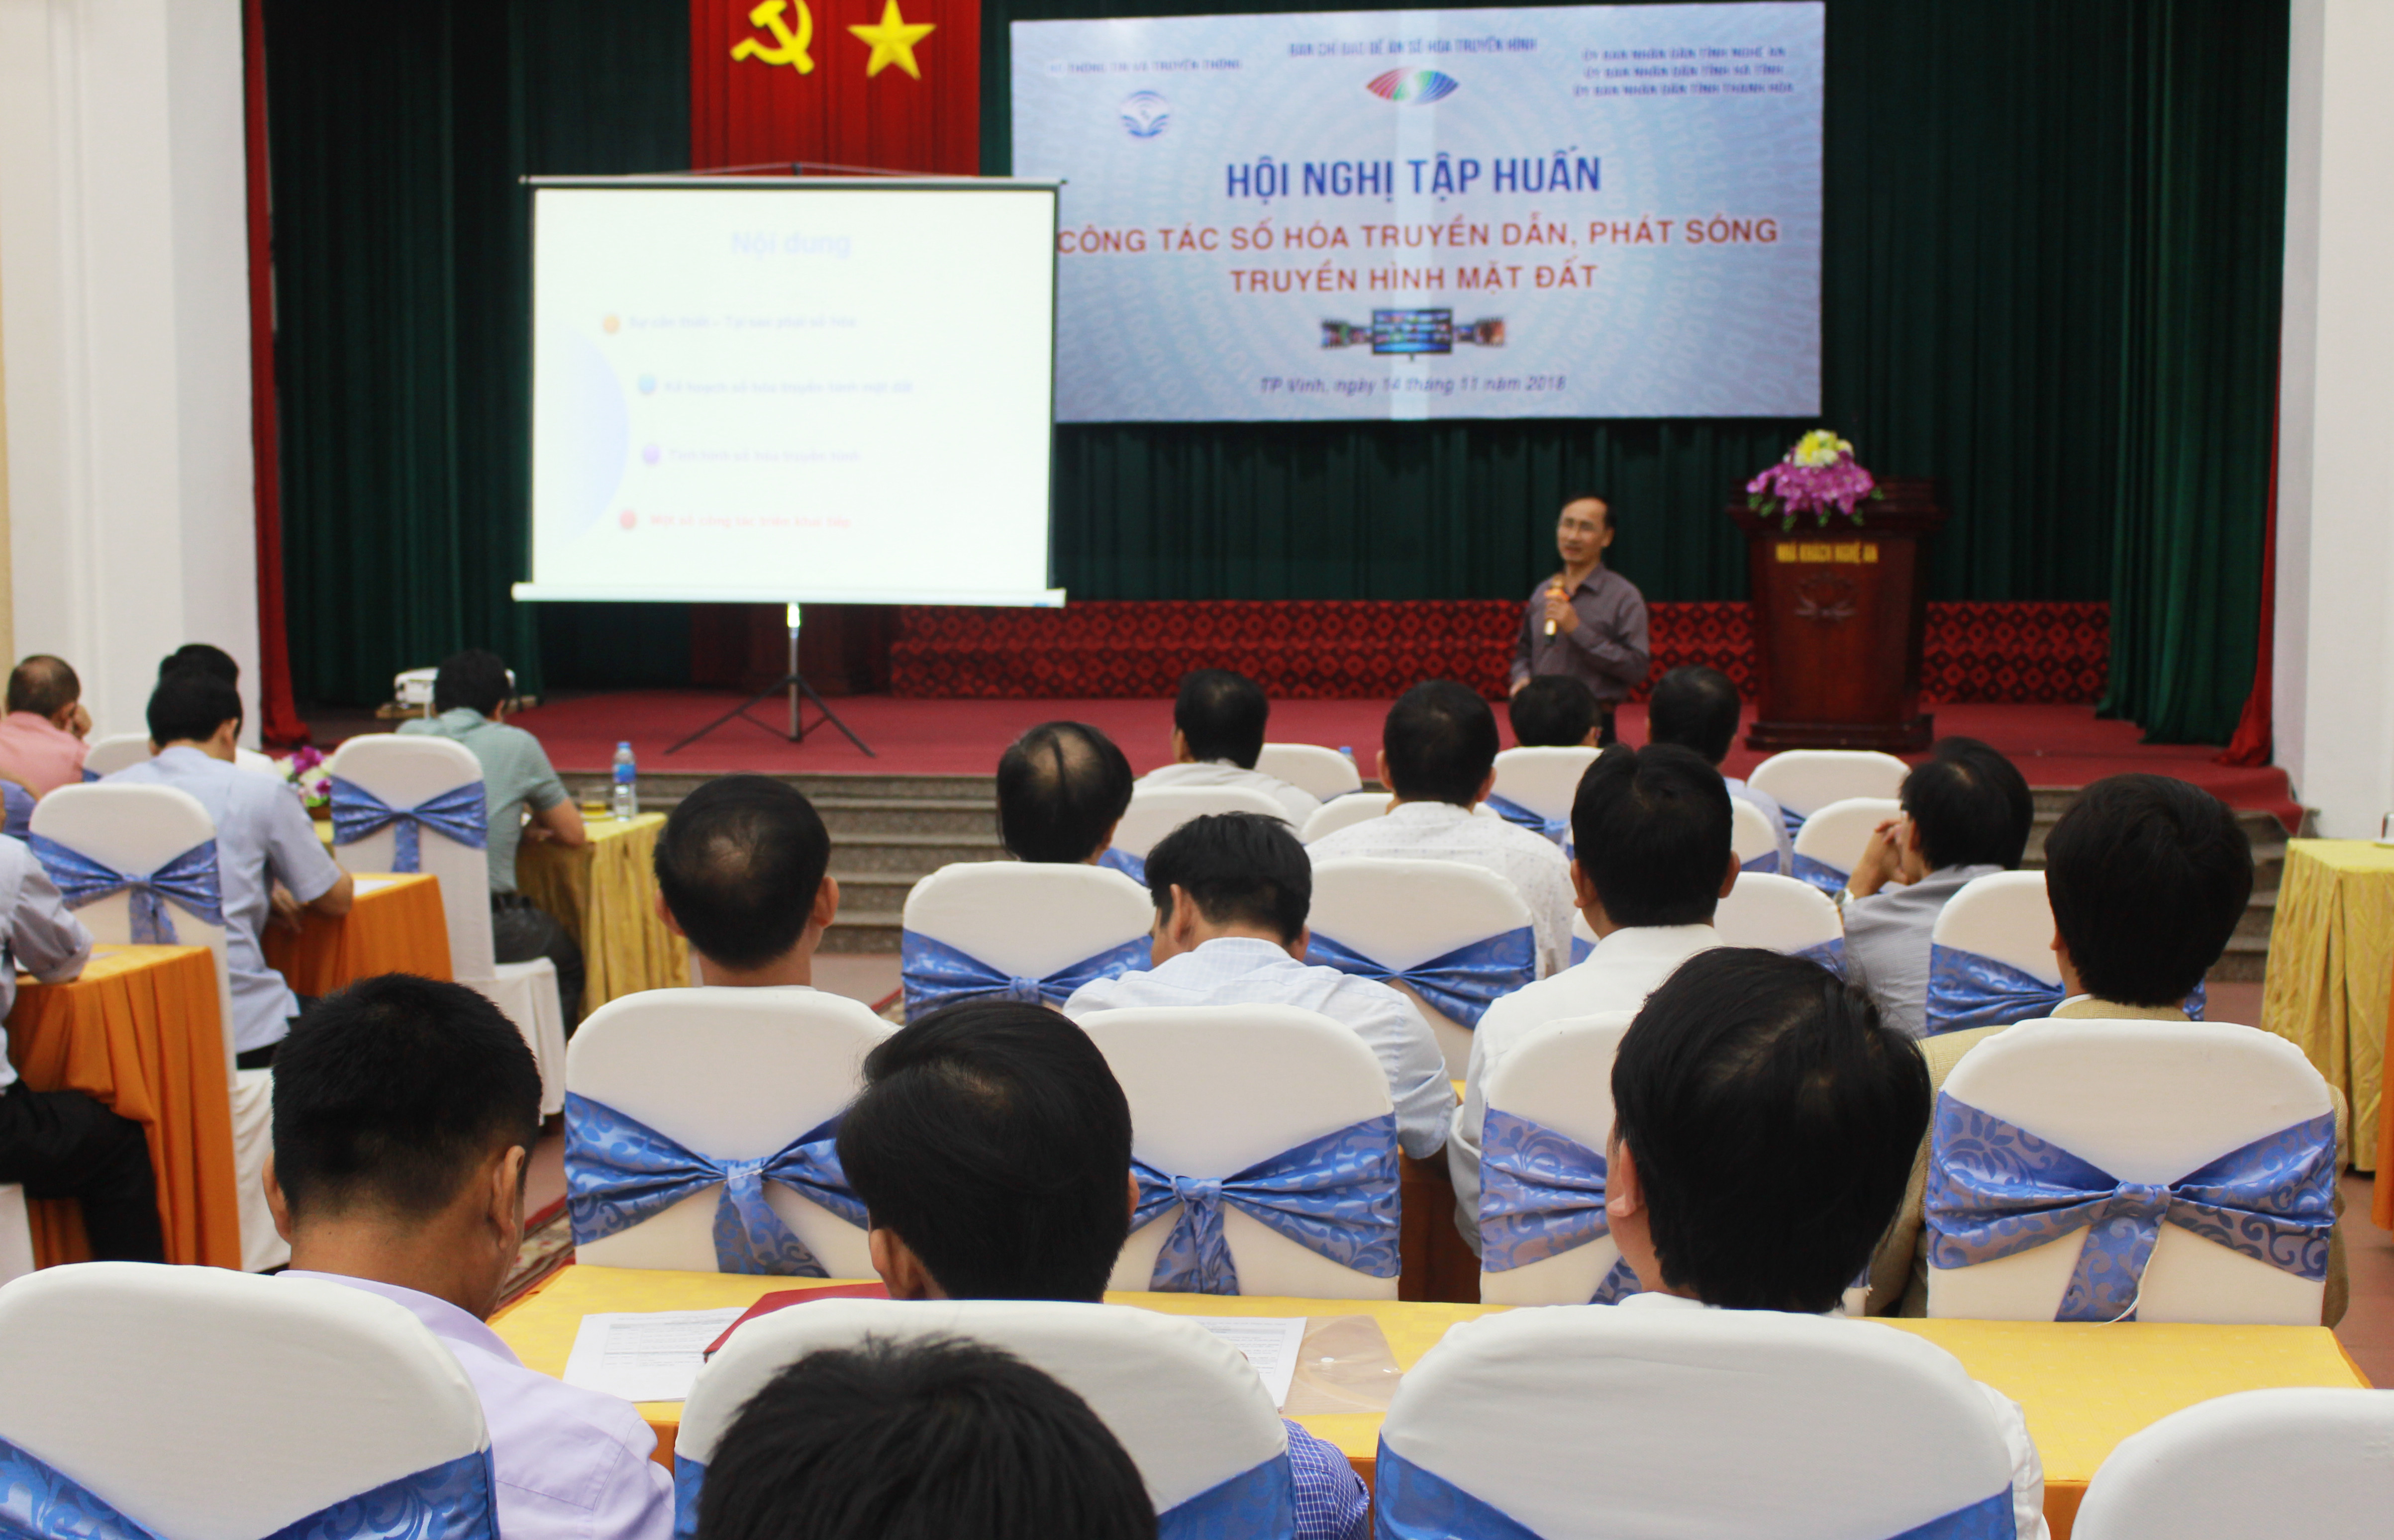 Tham dự buổi tập huấn có hơn 200 đại biểu là cán bộ thông tin cơ sở của các tỉnh Thanh Hóa, Nghệ An, Hà Tĩnh. Ảnh: Phương Thúy